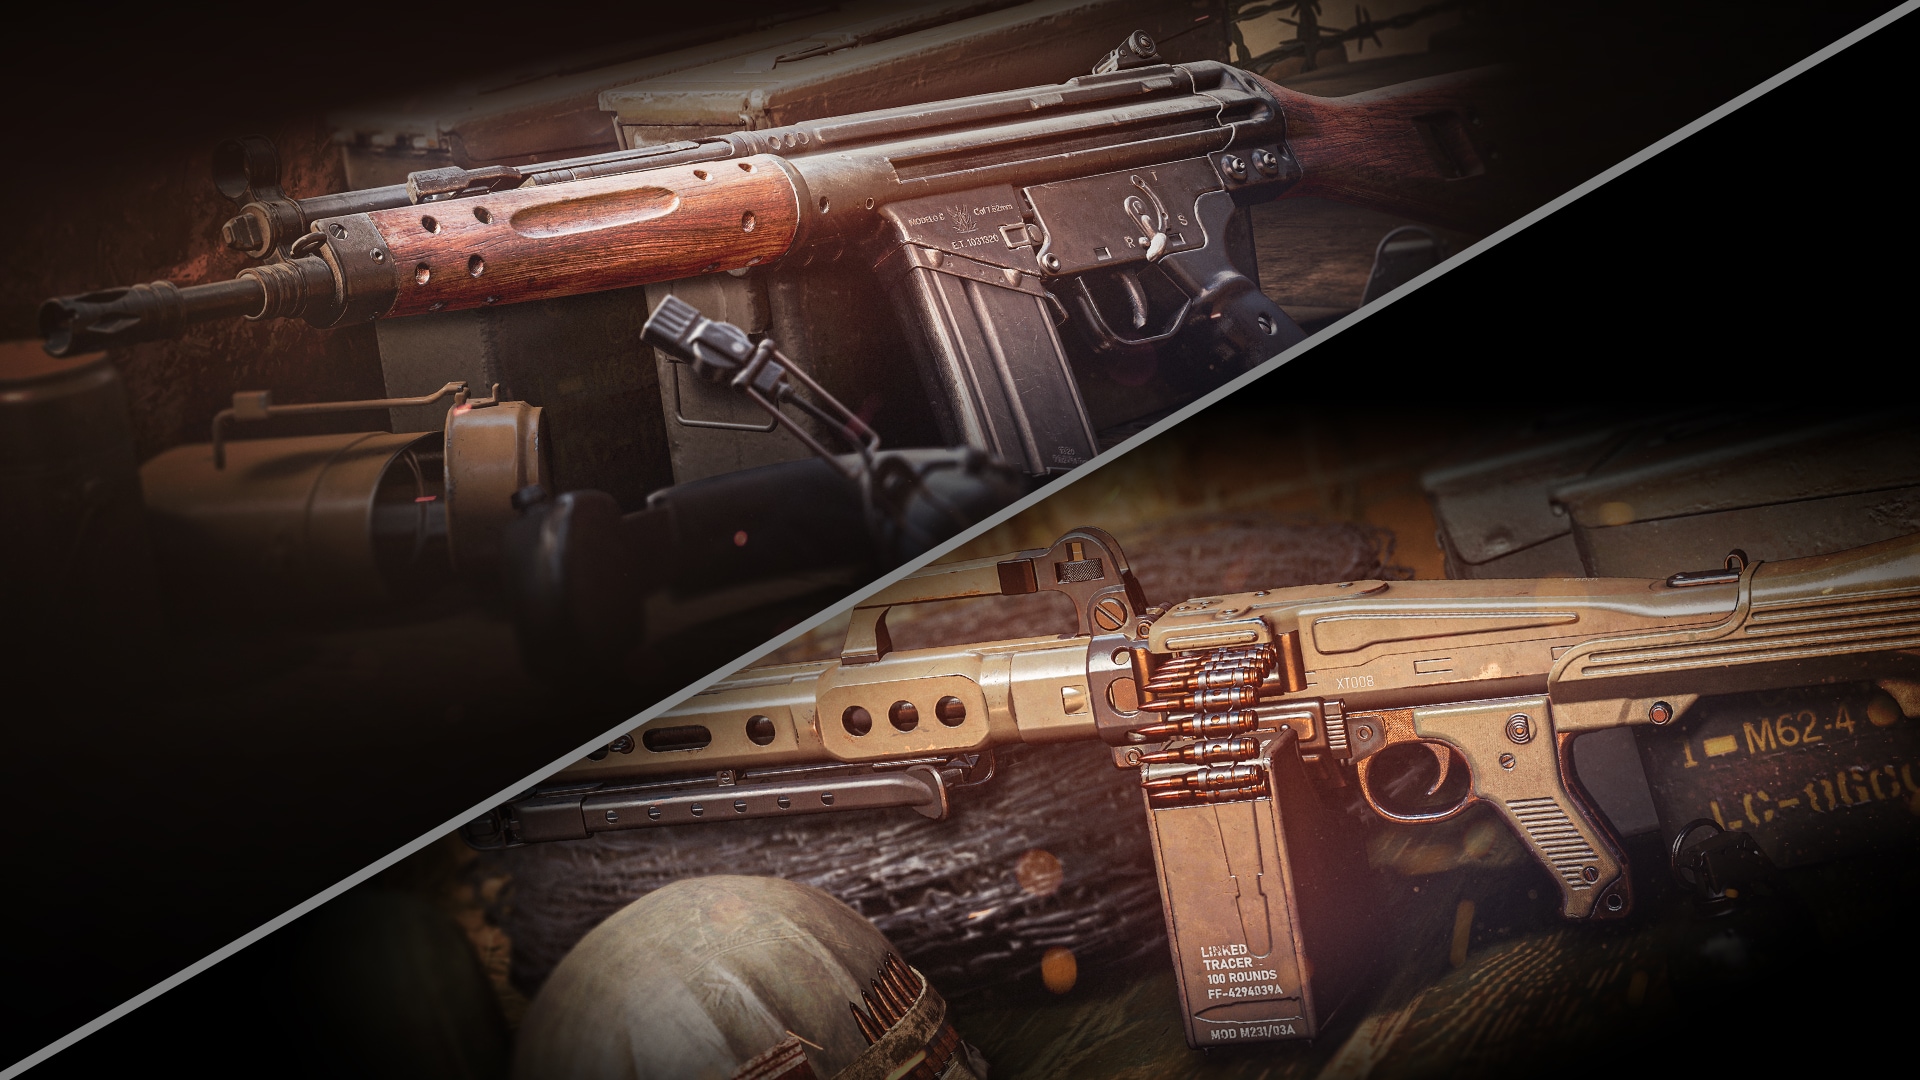 CoD Vanguard March 31 update: Assault Rifle buffs, LMG nerfs, full patch  notes - Dexerto